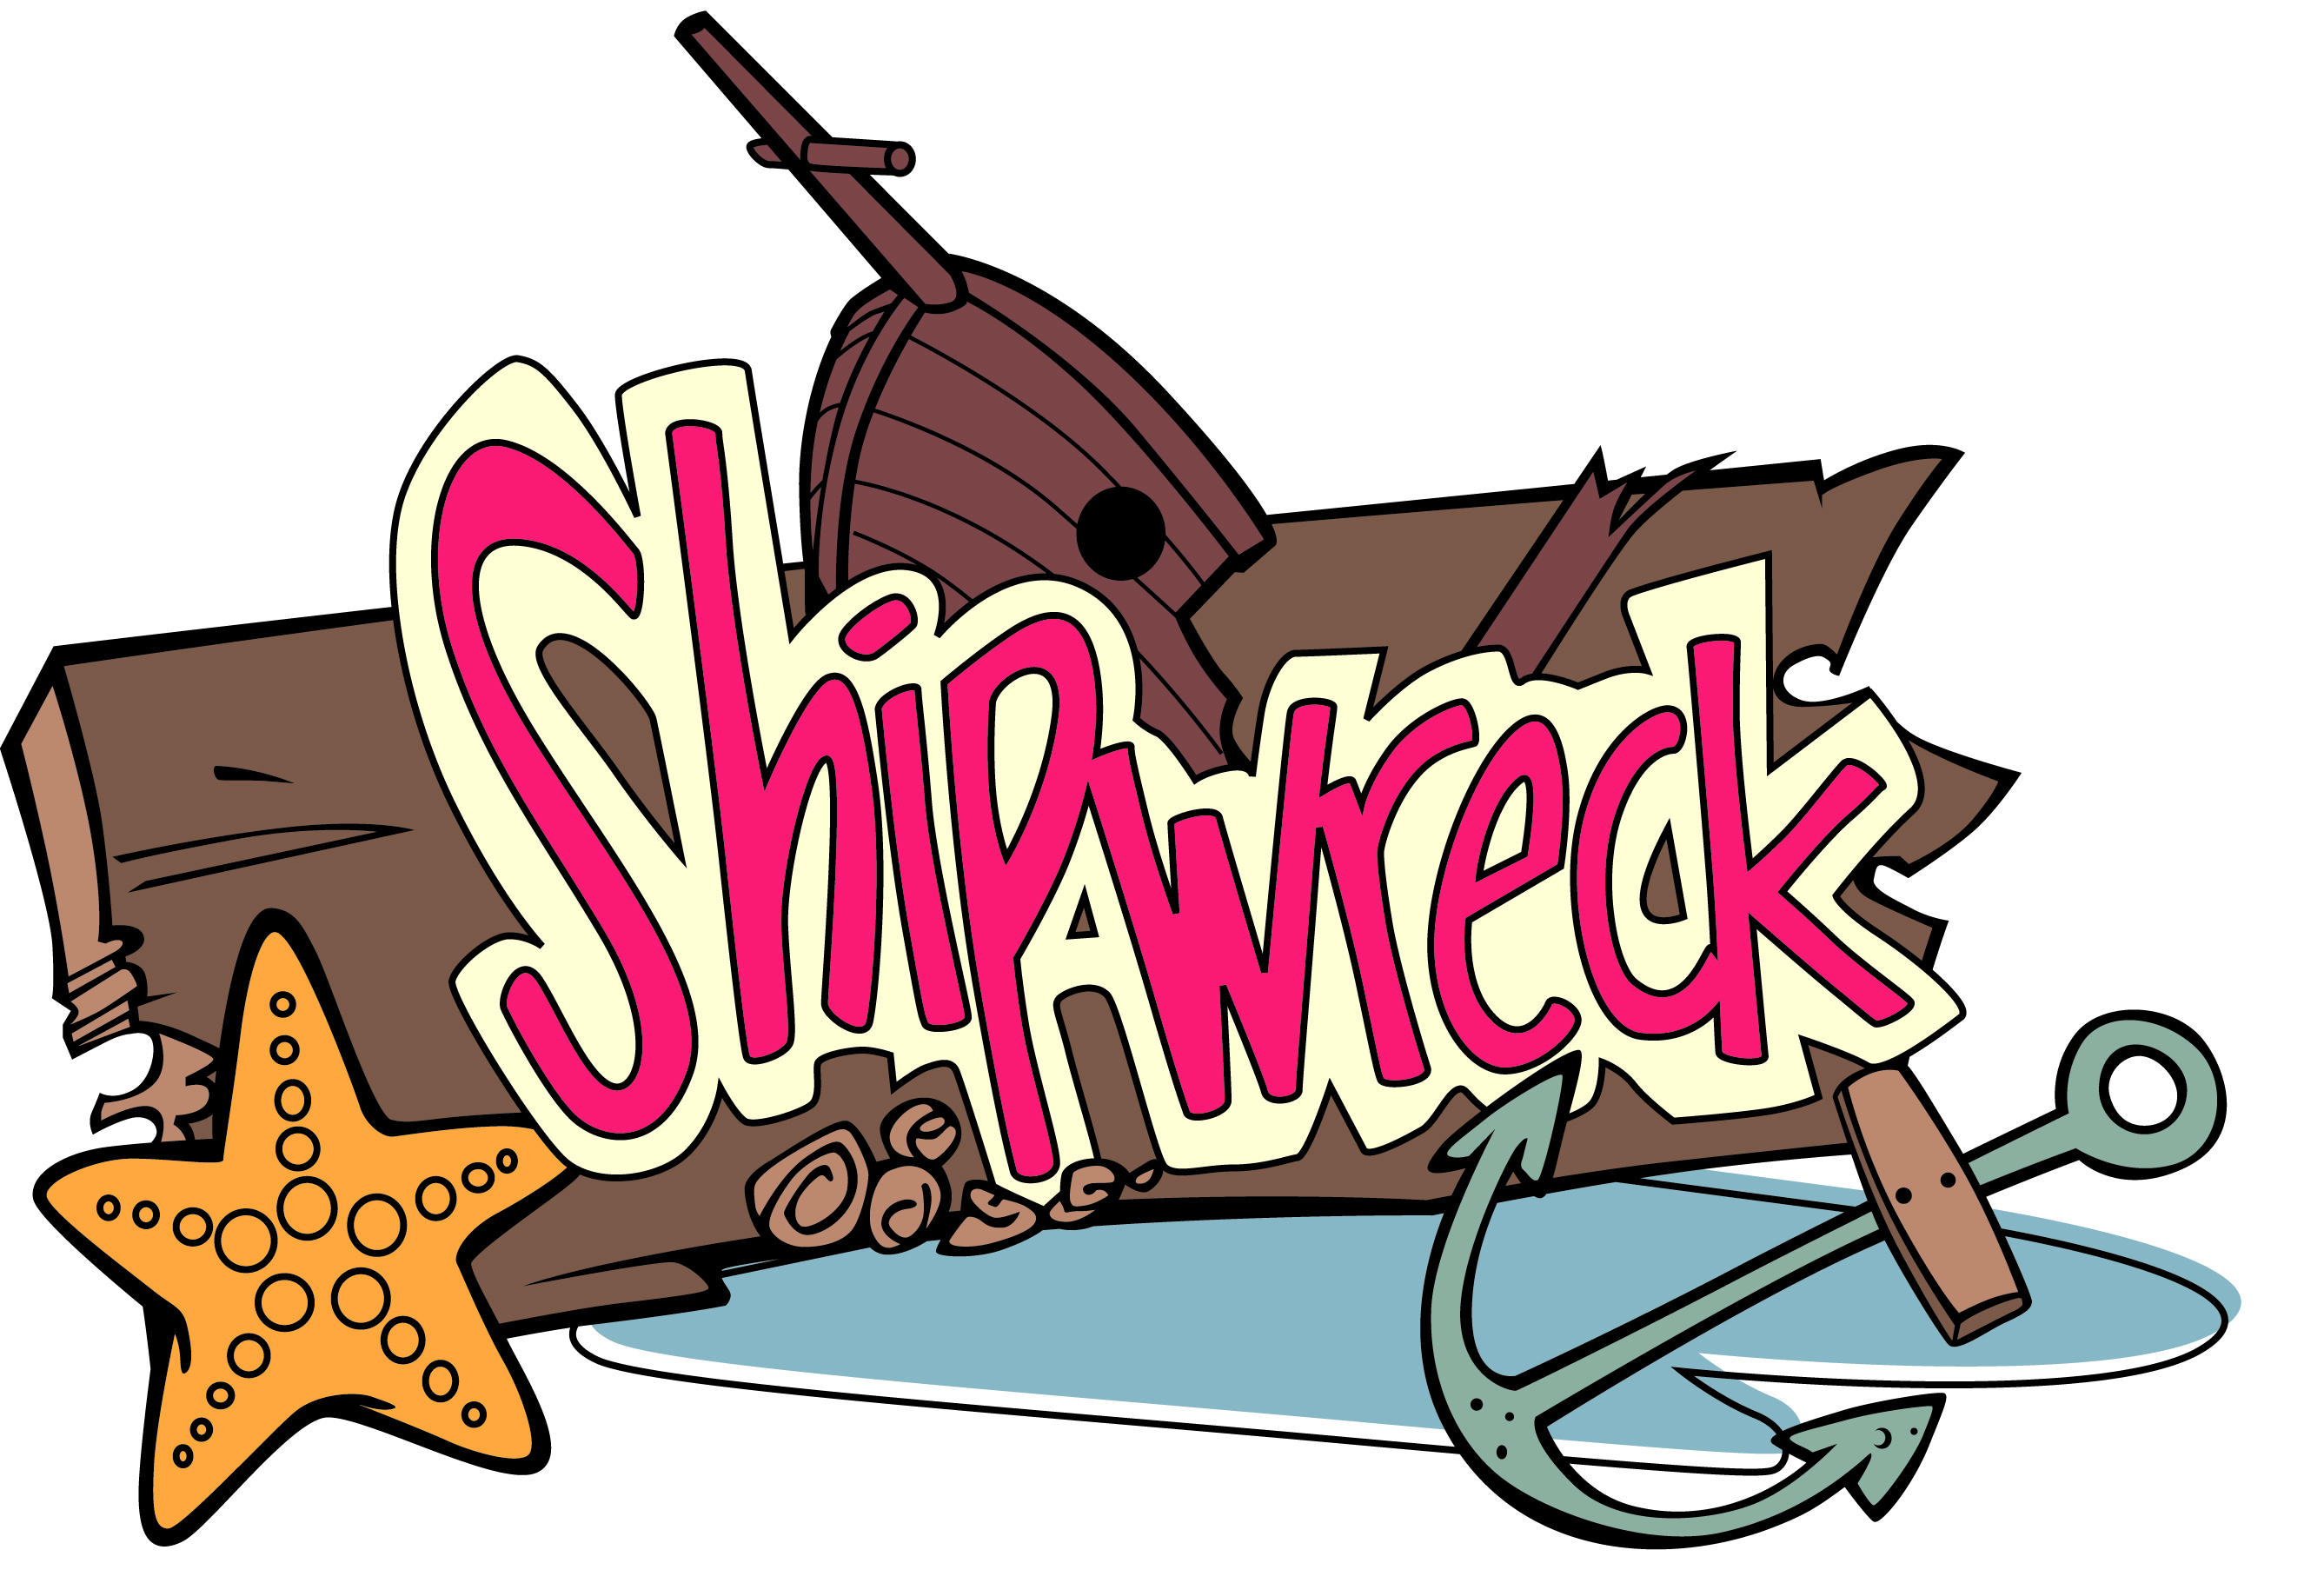 Shipwreck clip art